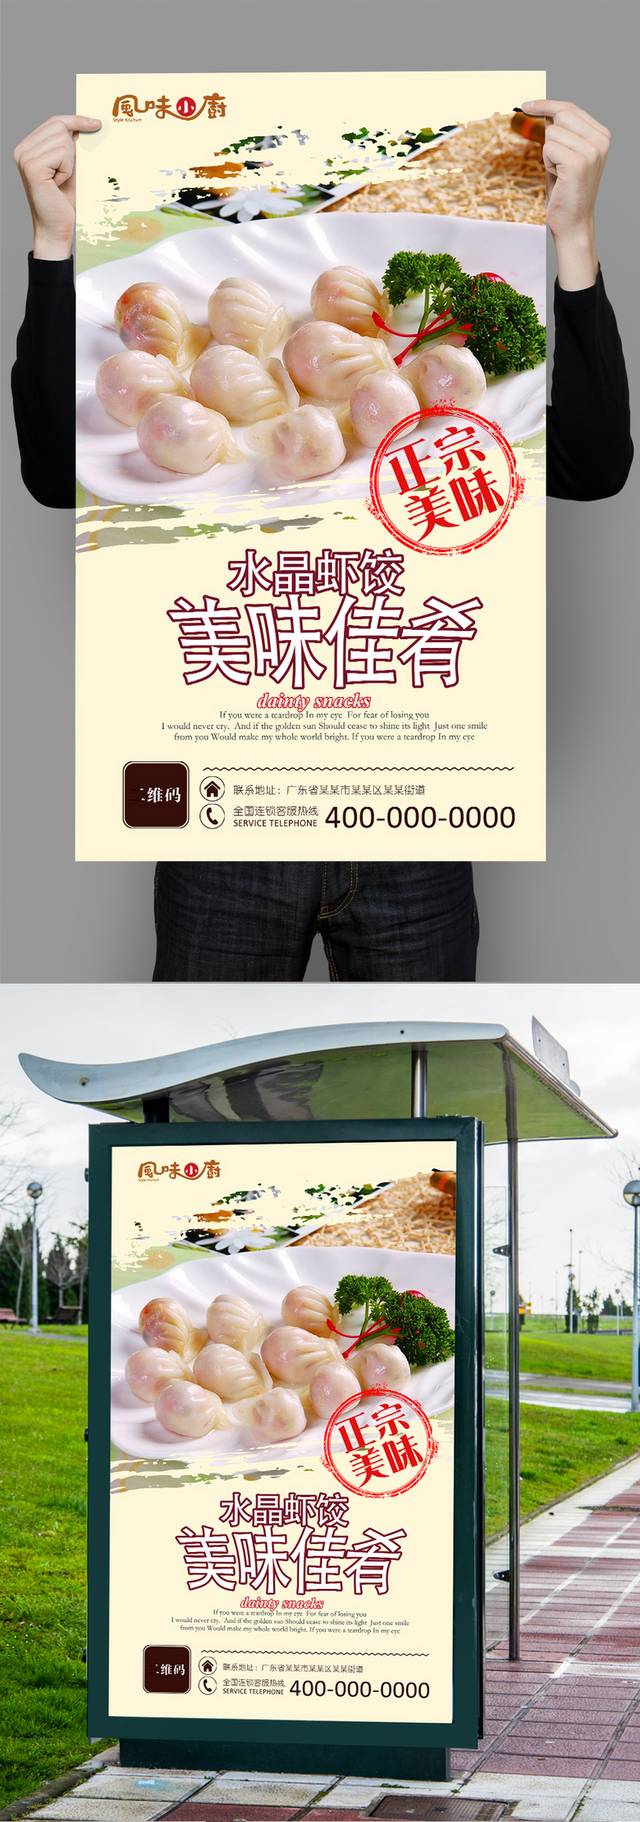 美味水晶虾饺高清宣传海报设计